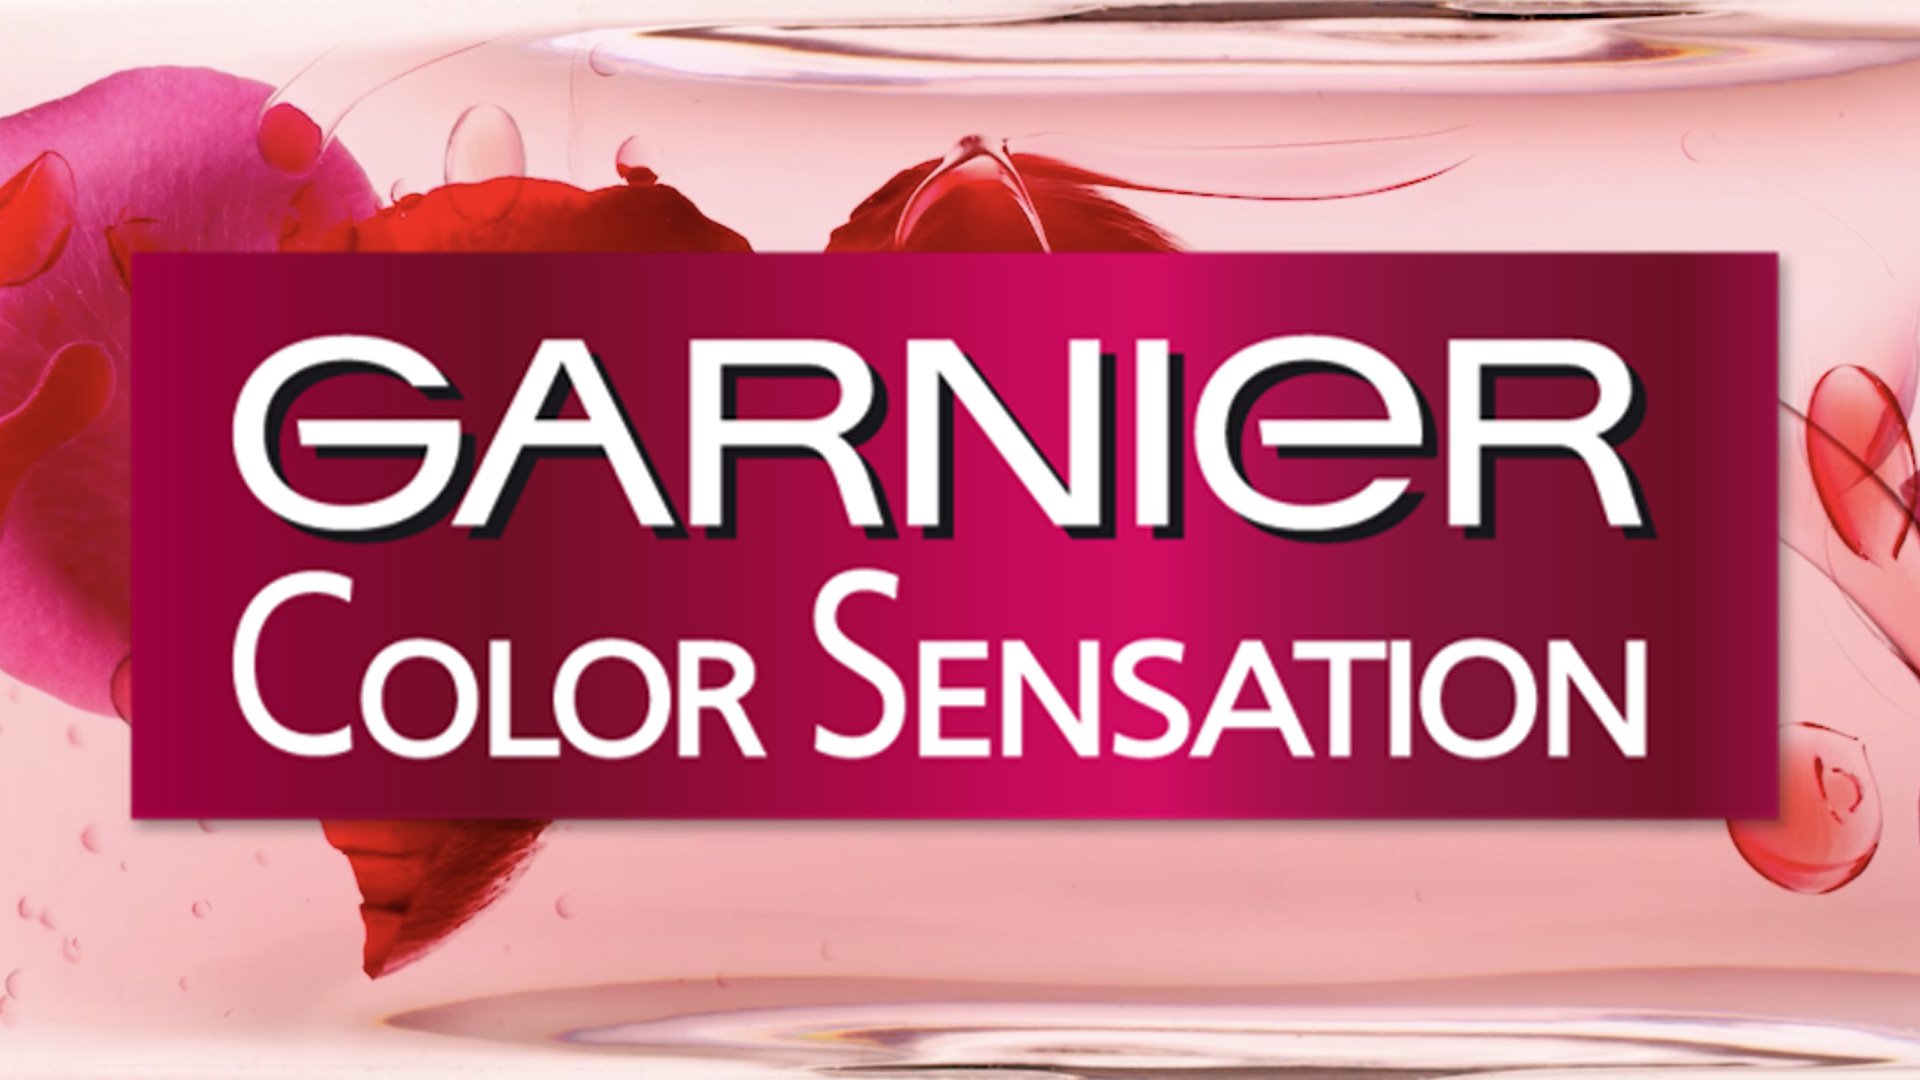 Testa hårfärg - Testa hårfärg online gratis | Garnier